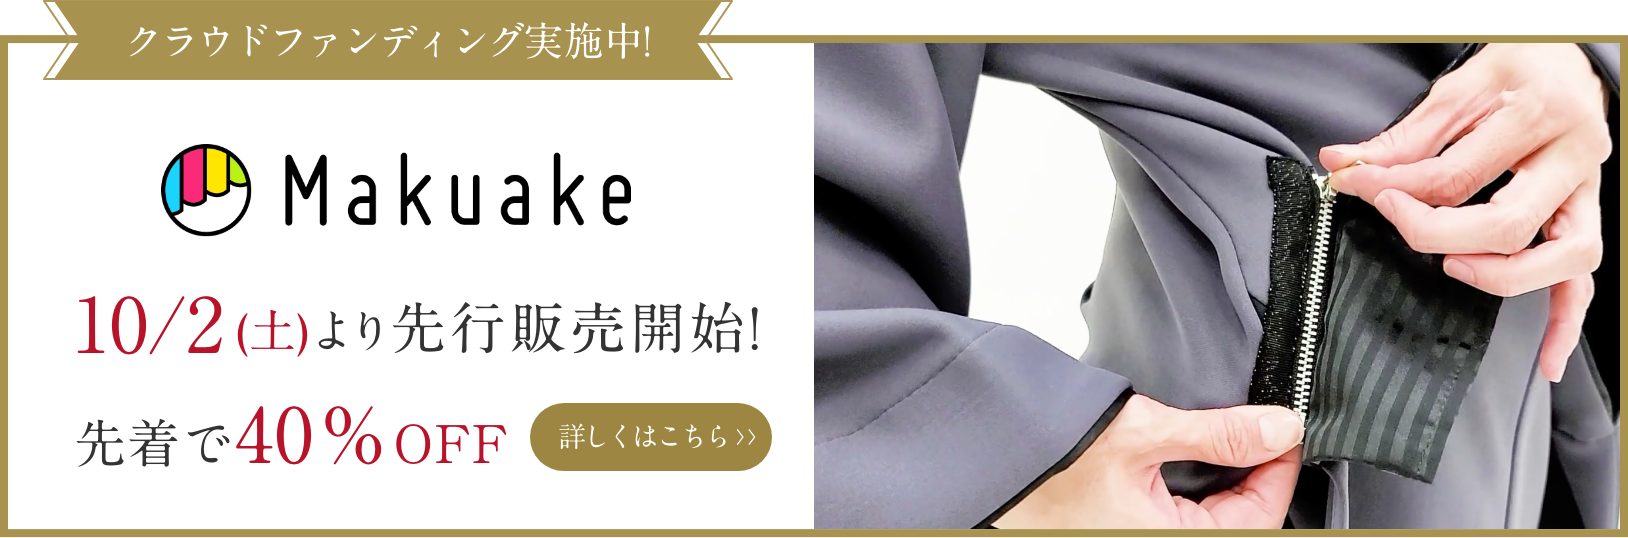 クラウドファンディング実施中!Makuake 10月2日(土)より先行販売開始!先着で40%OFF